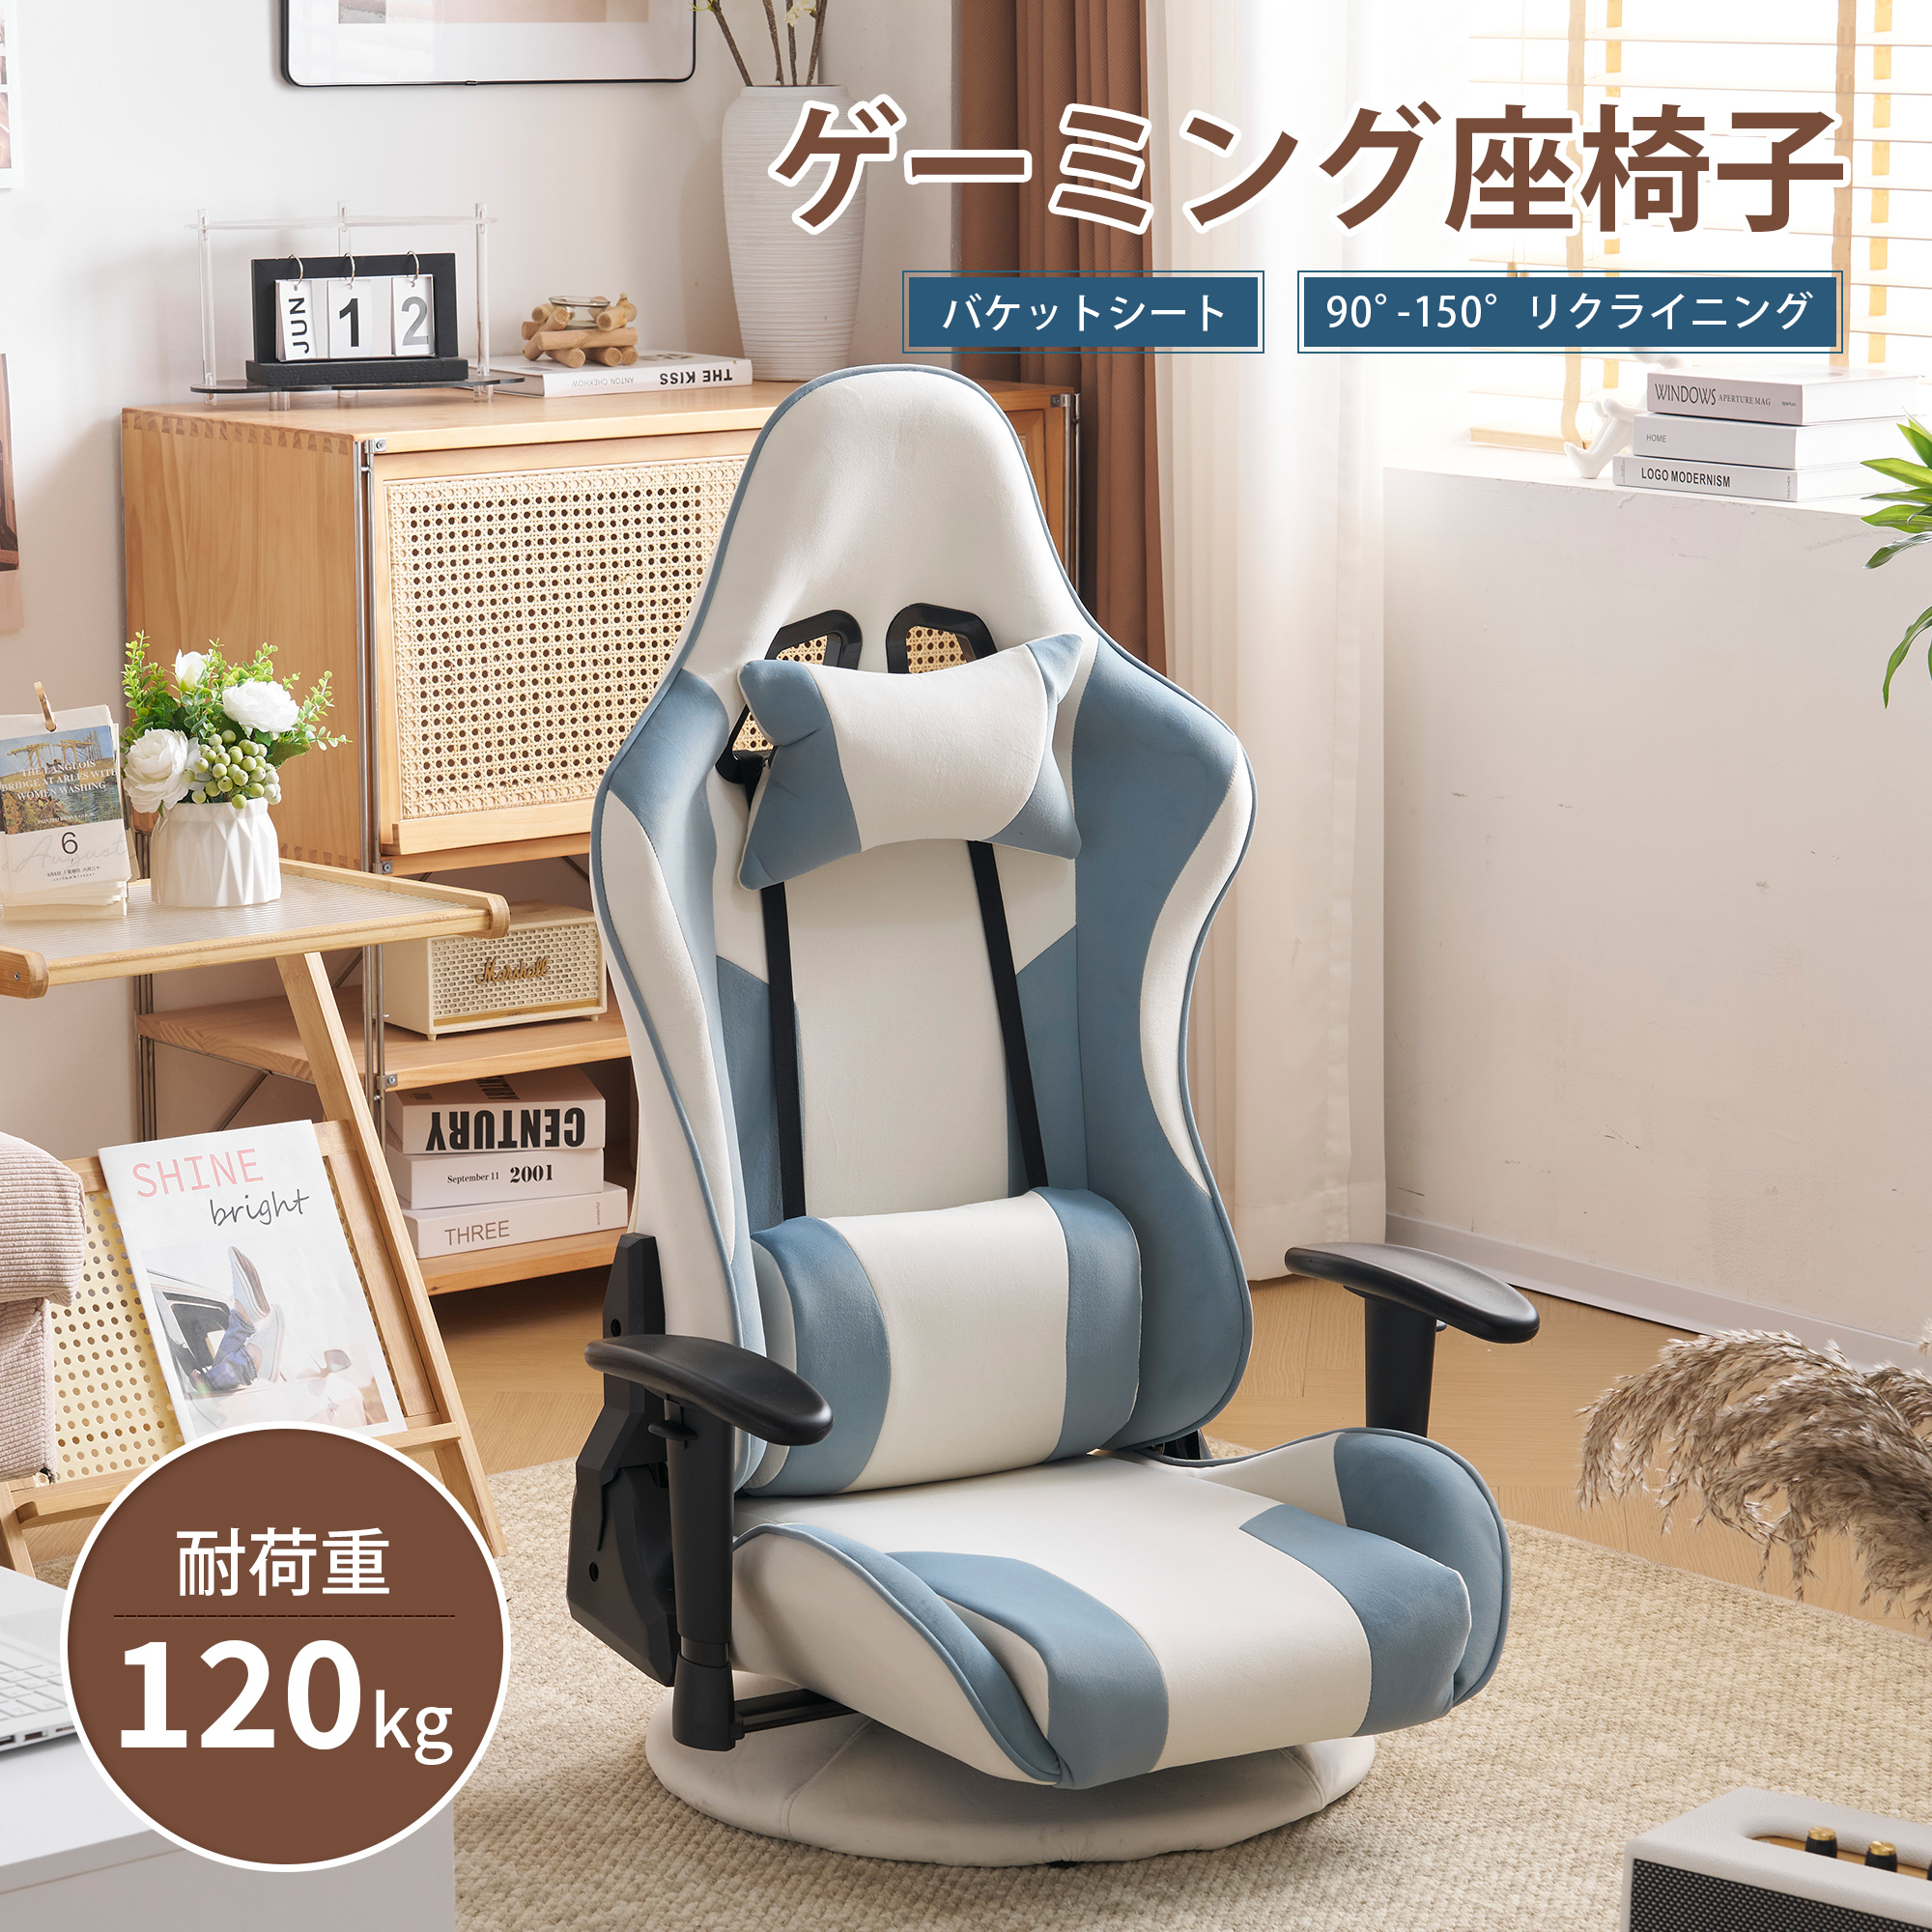 【楽天市場】新作 ゲーミングチェア ィス 座椅子 デスクチェア 通気 